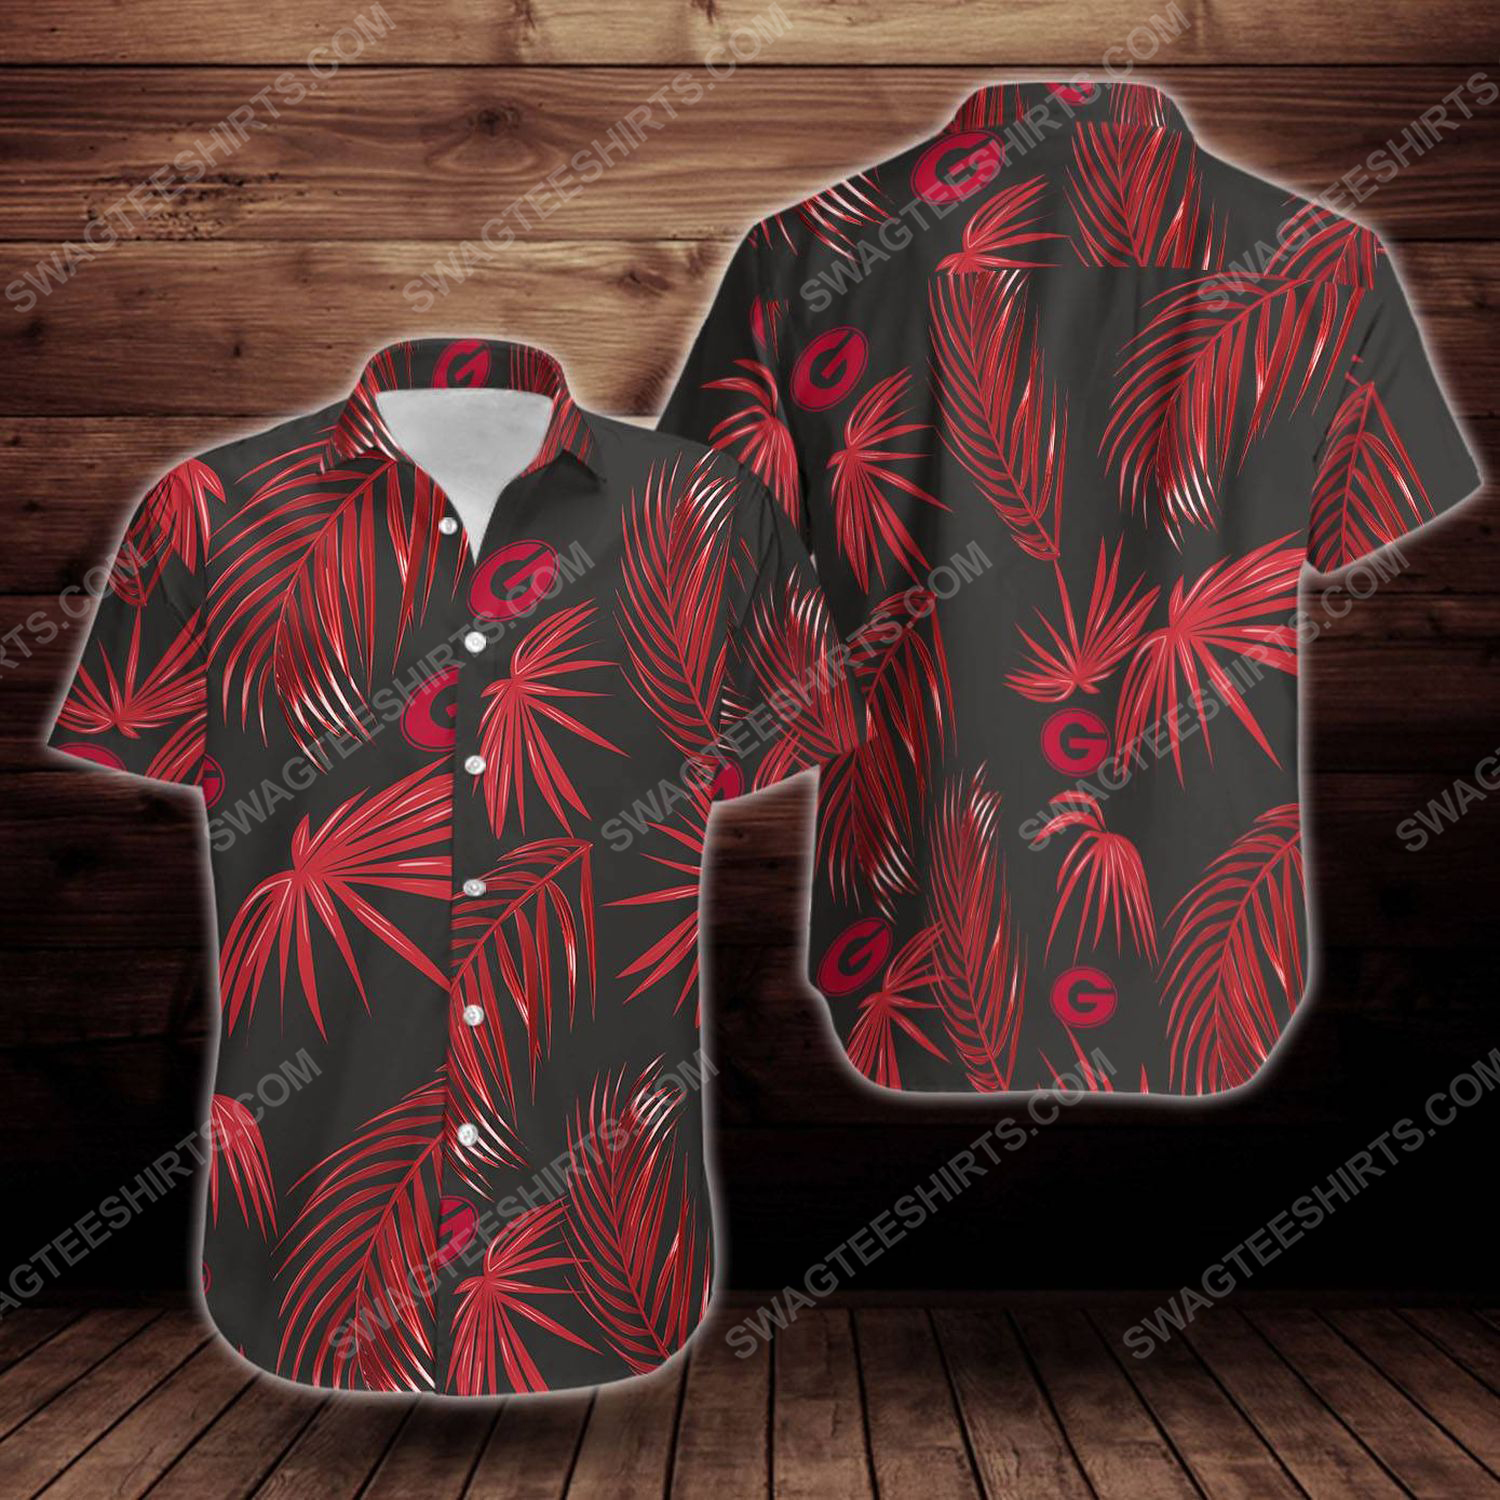 Tropical summer georgia bulldogs short sleeve hawaiian shirt 2 - Copy